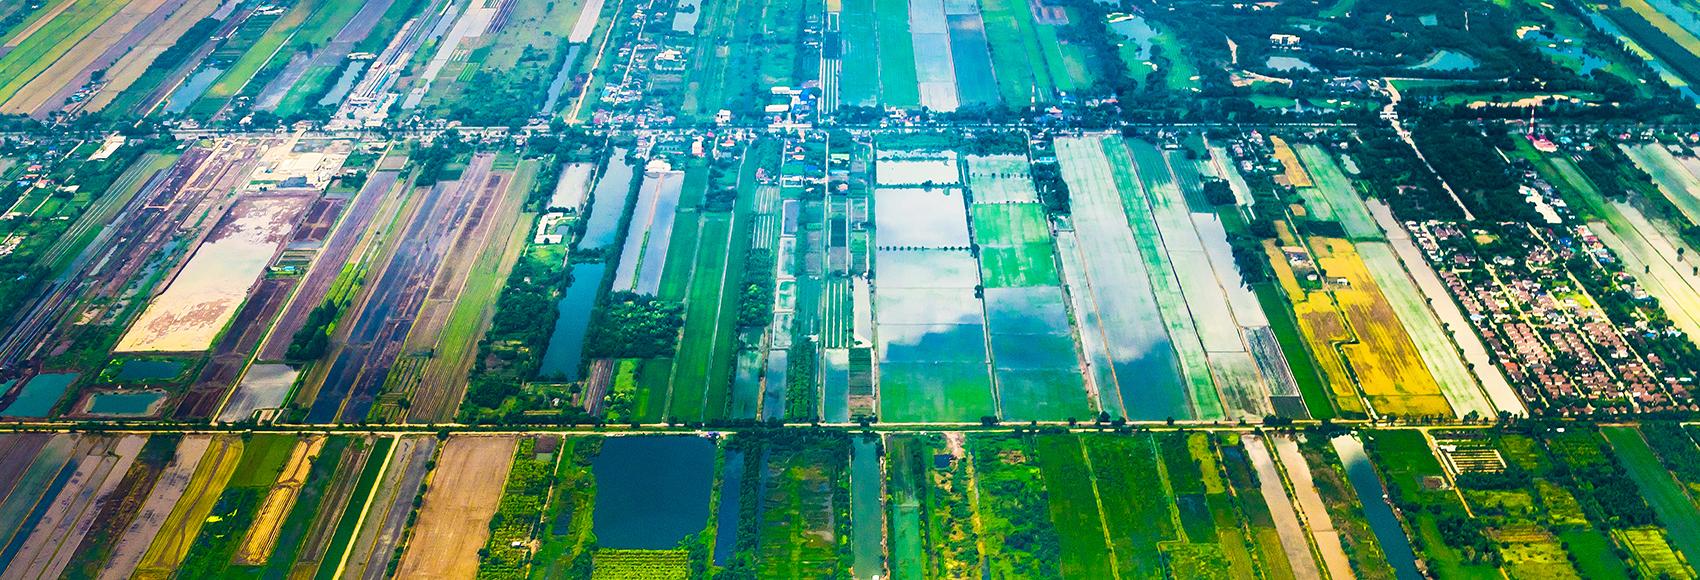 Vue aérienne de la périphérie rurale